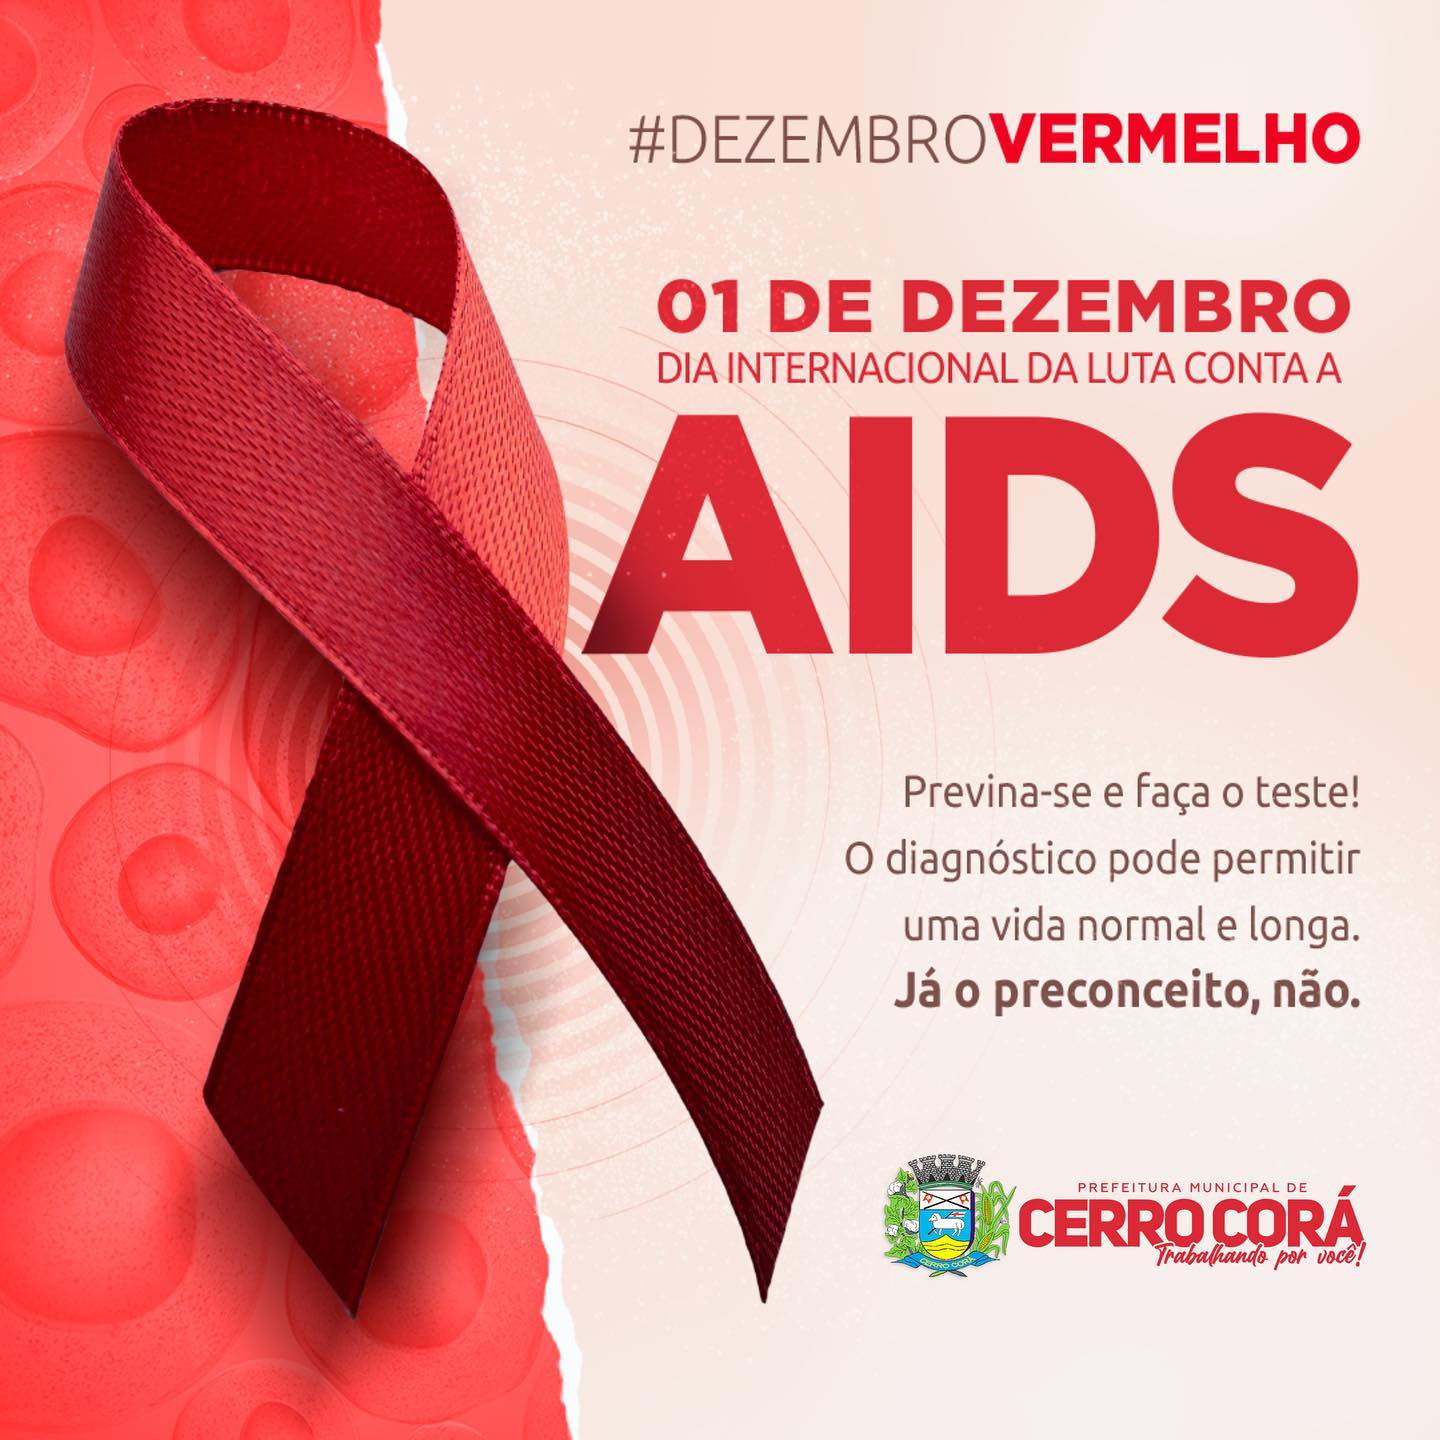 Cerro Corá: Dezembro Vermelho, conscientização da sociedade a respeito da prevenção e tratamento da Aids.